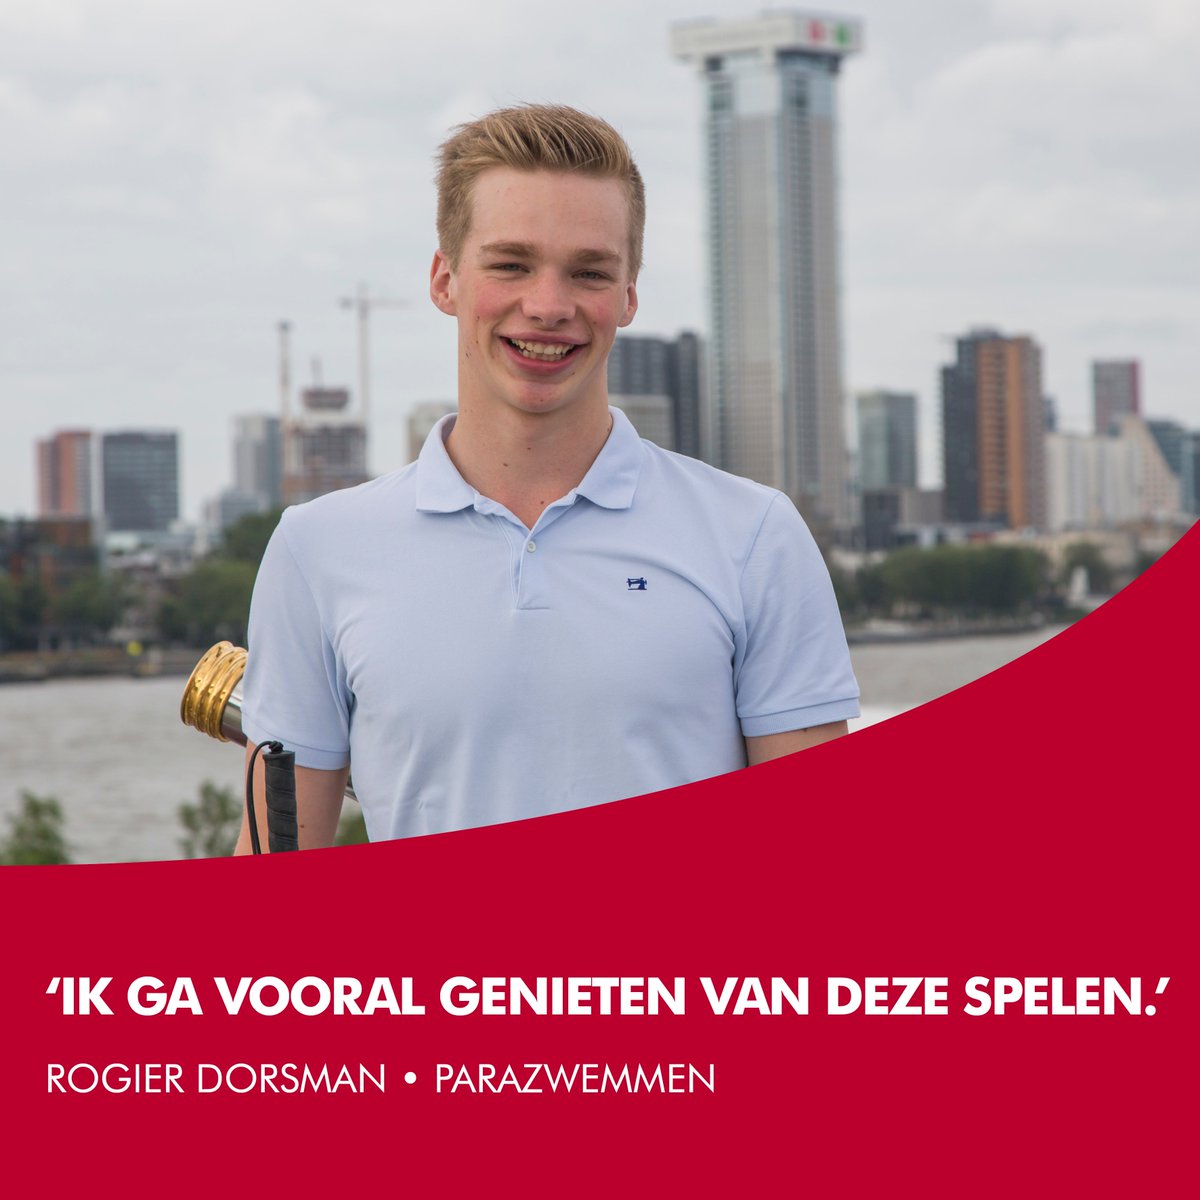 5 afstanden zwemt @RogierDorsman in de klasse S11 (blind). ‘Het is super vet dat ik naast de wereldtop op de blokken sta. Het kan dat ik dichtklap van de zenuwen, maar ik heb me voorgenomen om vooral van deze Spelen te gaan genieten!' Bron: @Havenloods #010naarTokyo #Rotterdam